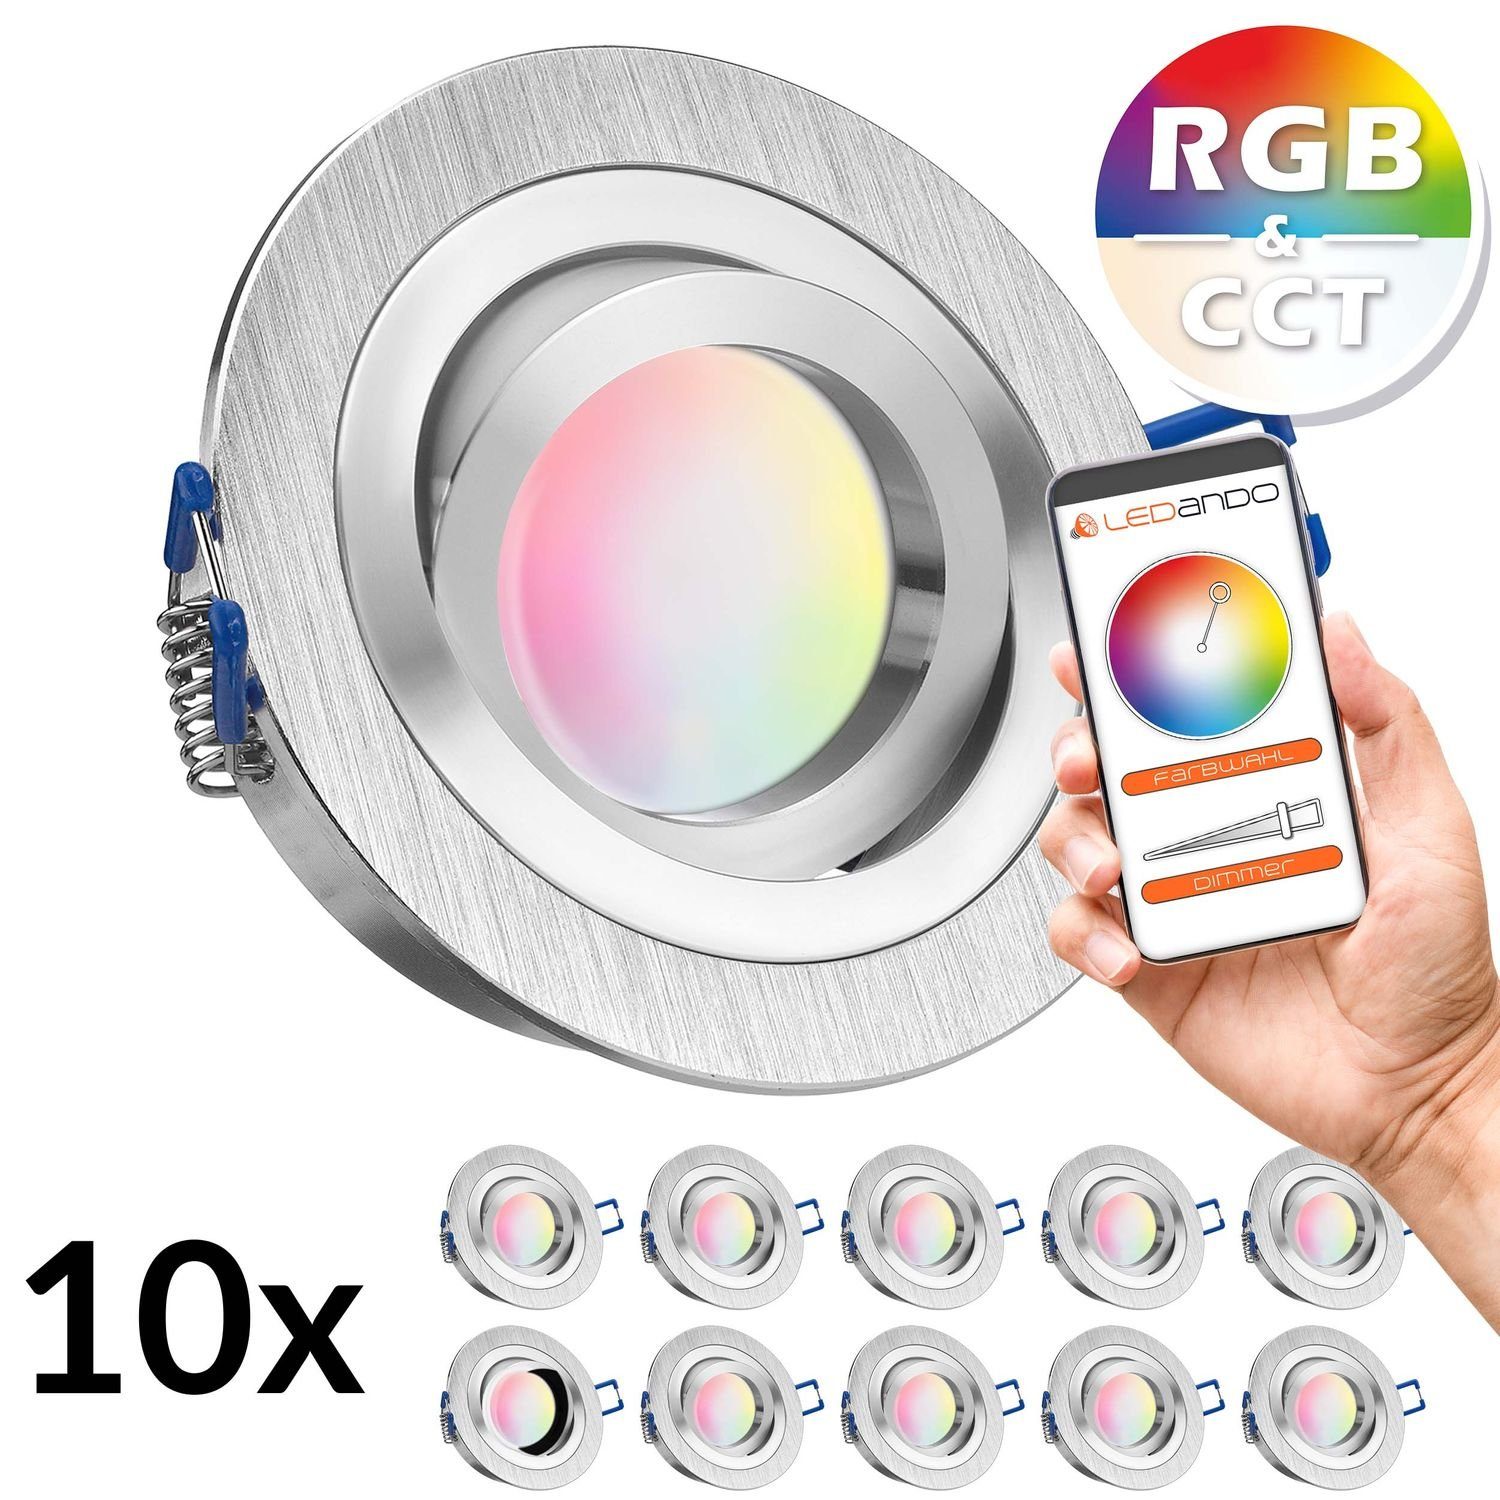 LEDANDO LED Einbaustrahler 10er RGB - CCT LED Einbaustrahler Set extra flach in aluminium gebürst